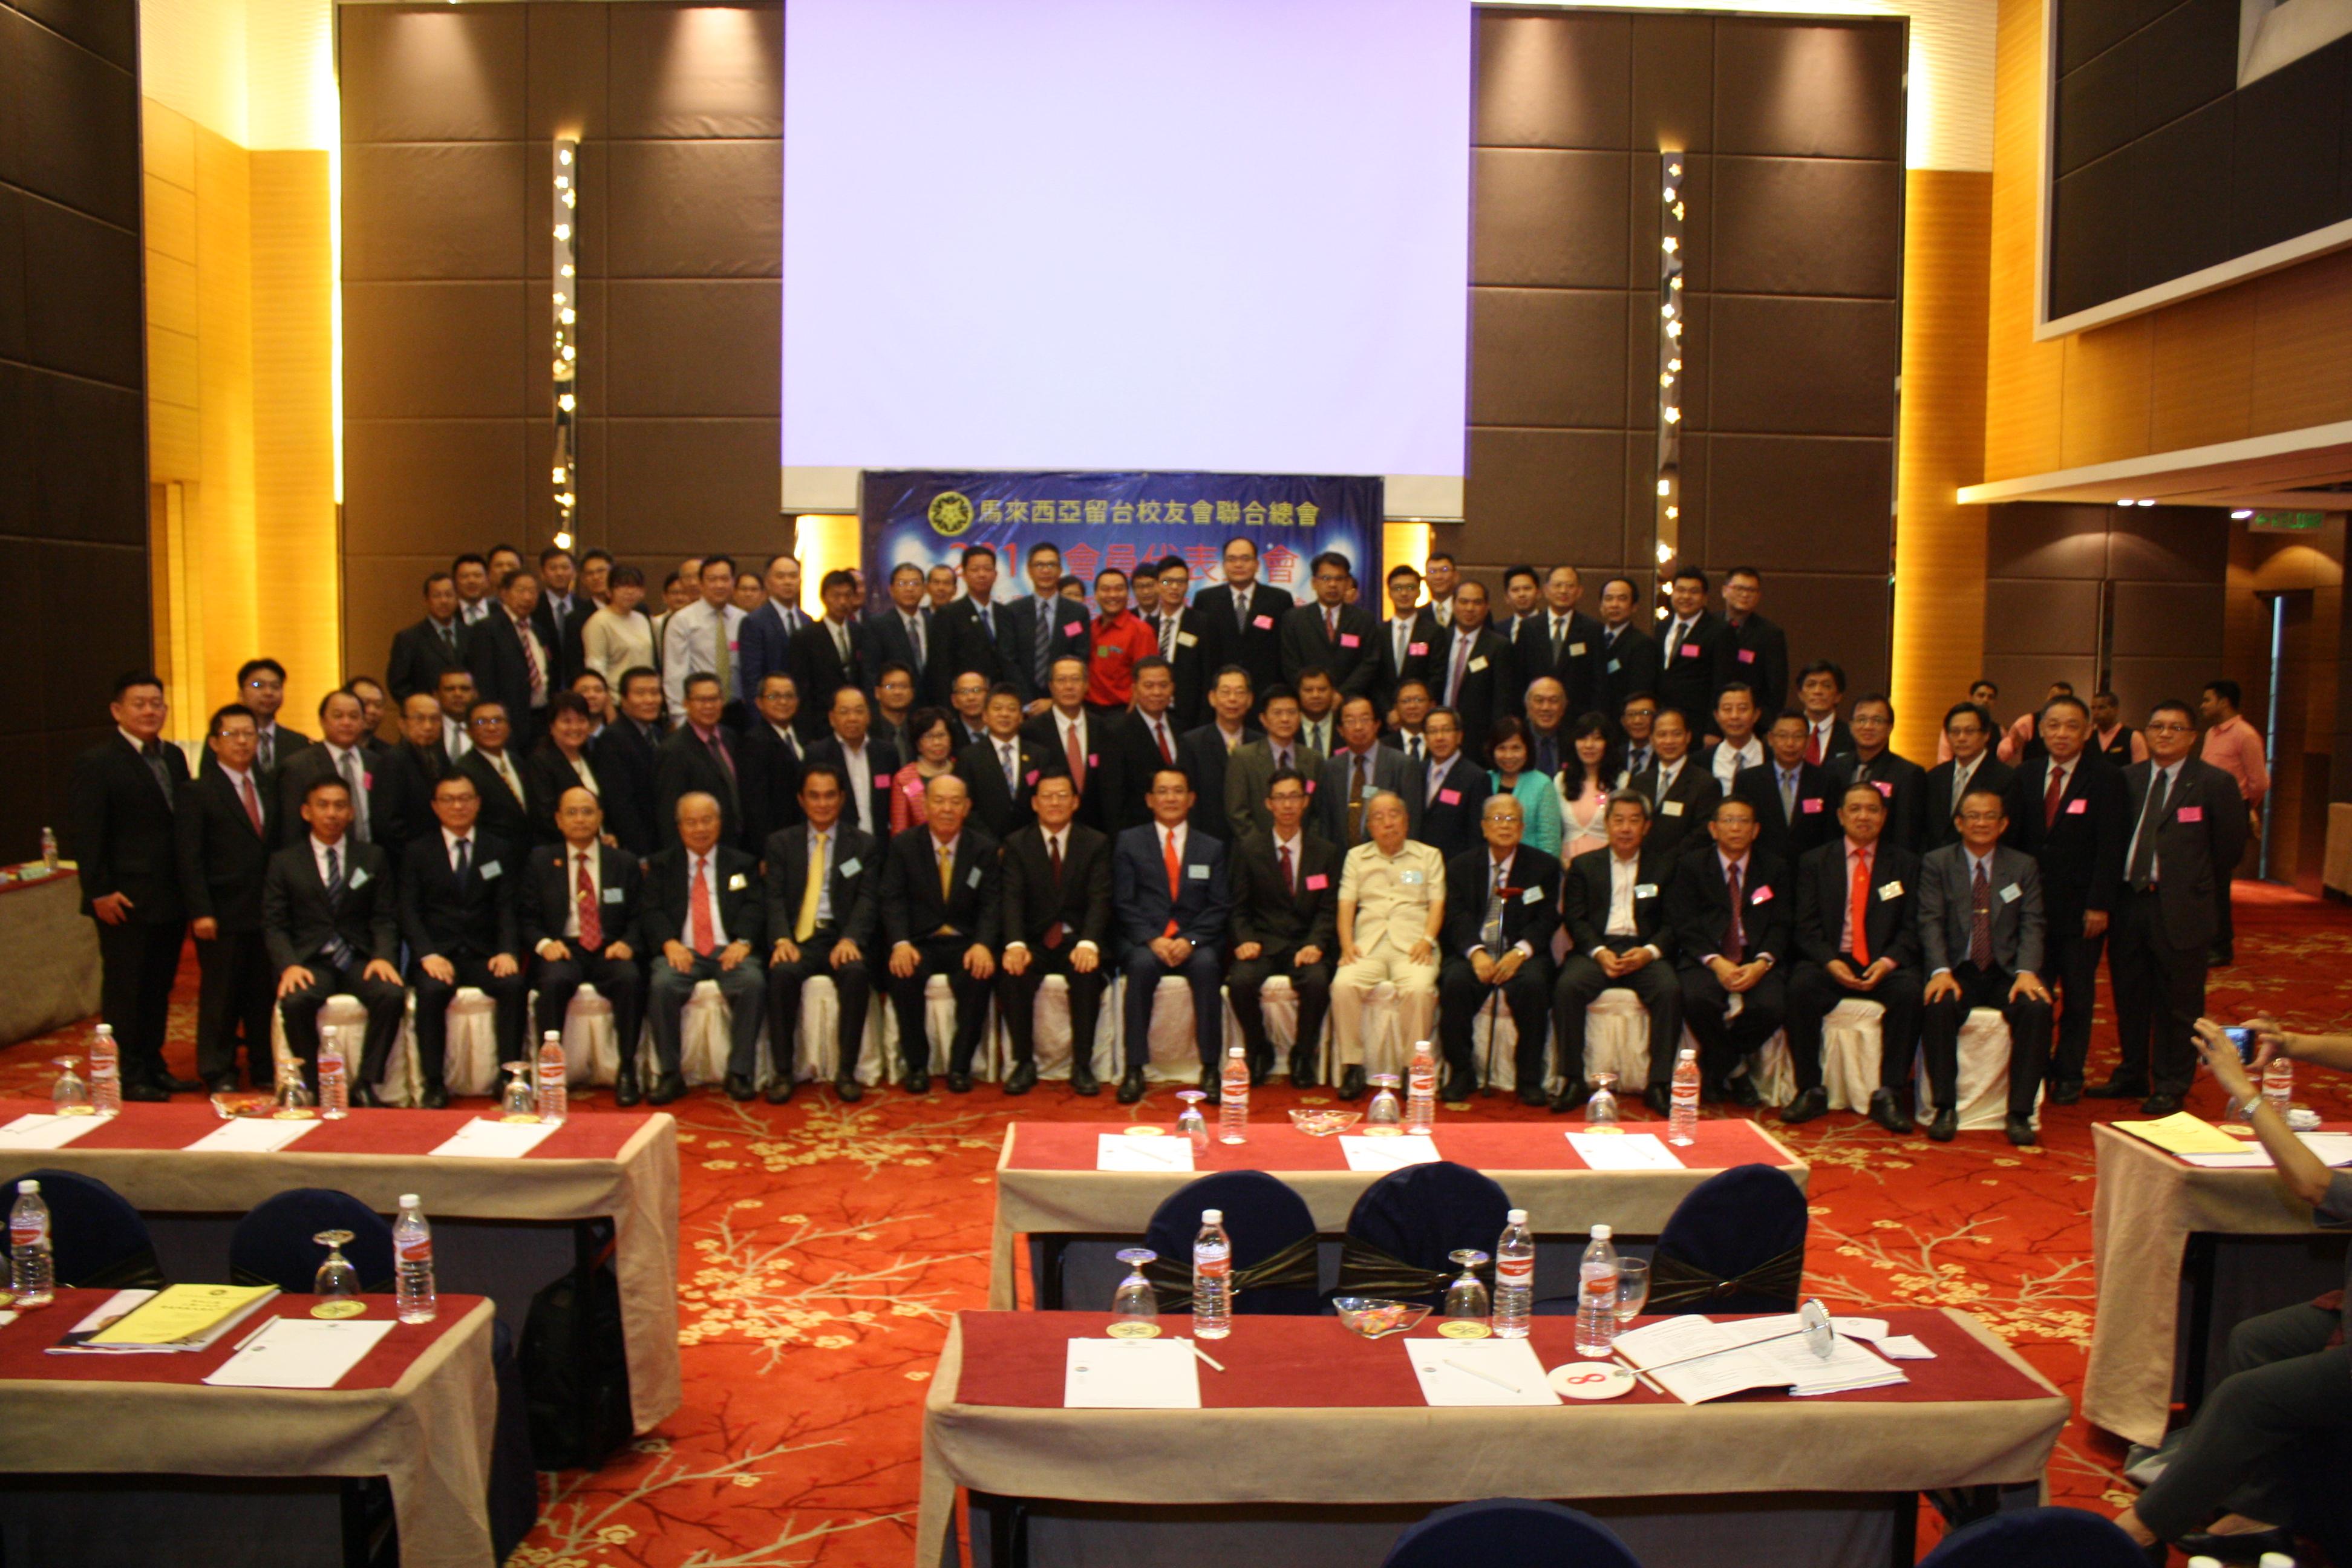 駐馬來西亞代表處章大使計平(前排左7)參加馬來西亞留臺校友會聯合總會2016年會員代表大會開幕典禮，並與該會顧問、理事幹部合影留念。